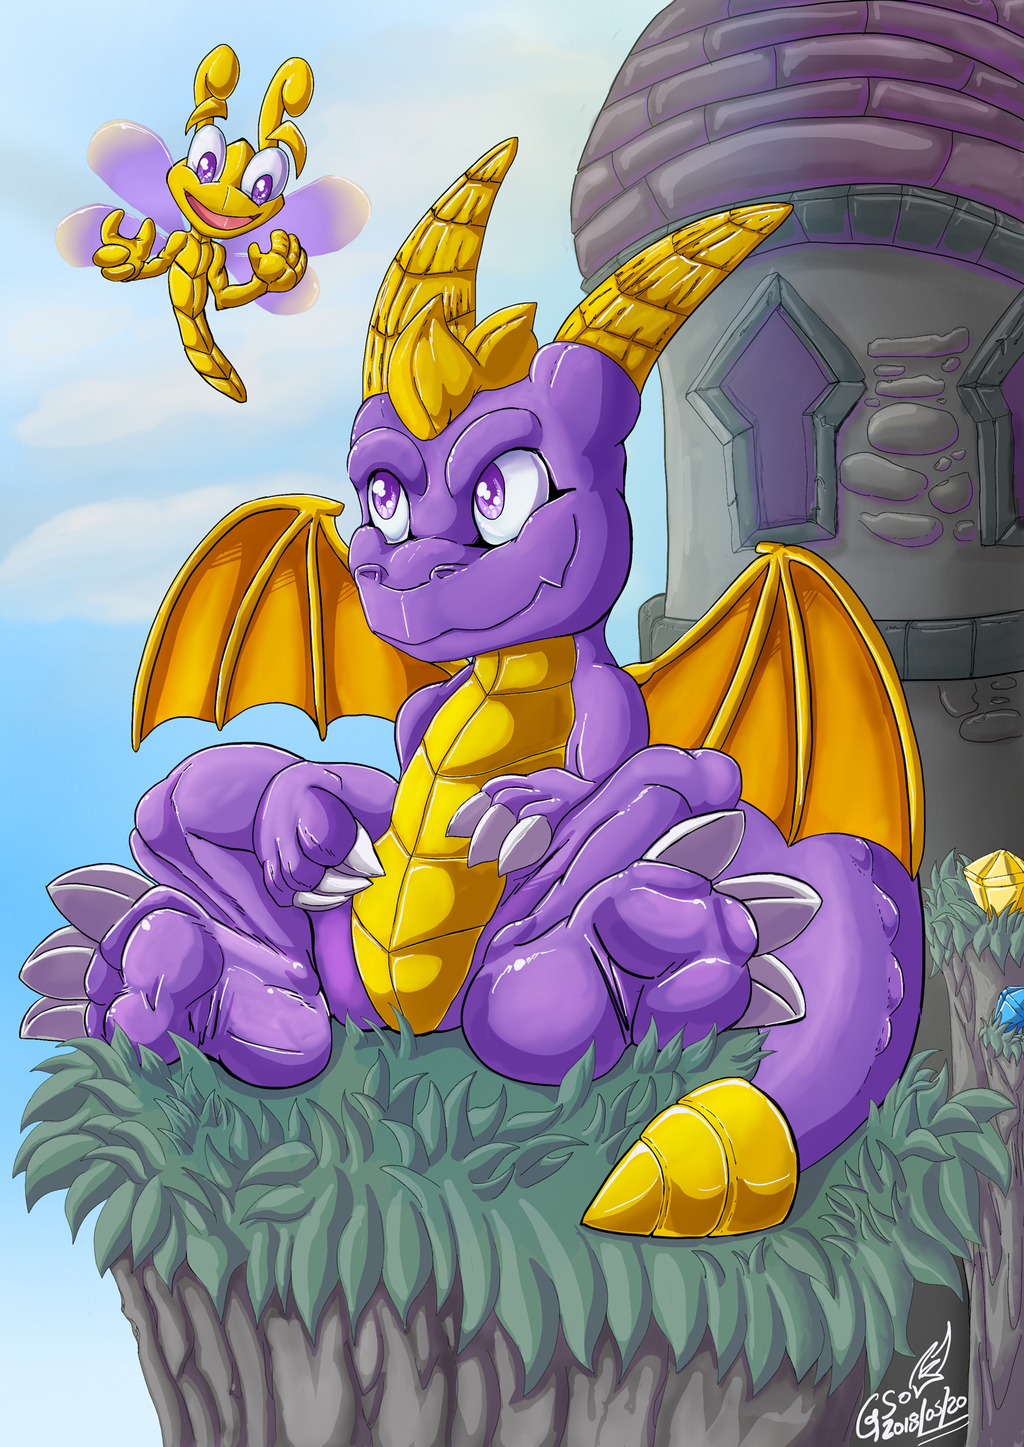 Awaiting for a cute purple dragon